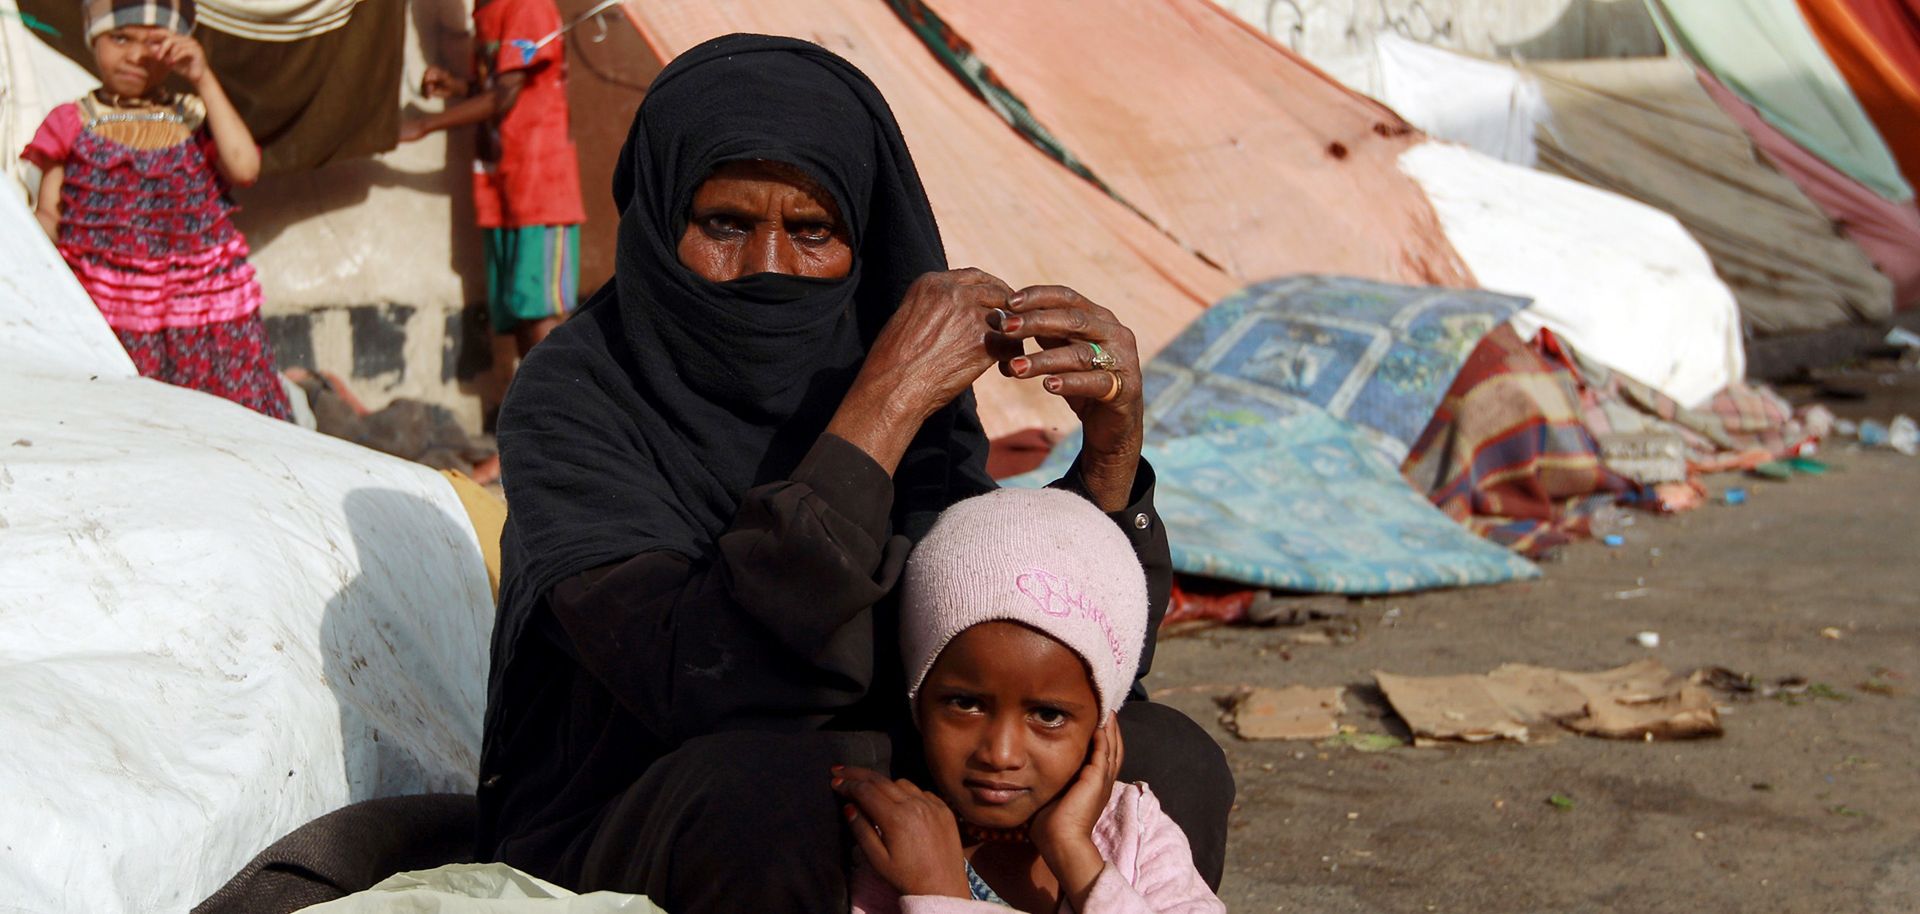 Yemen's Persistent Humanitarian Crisis